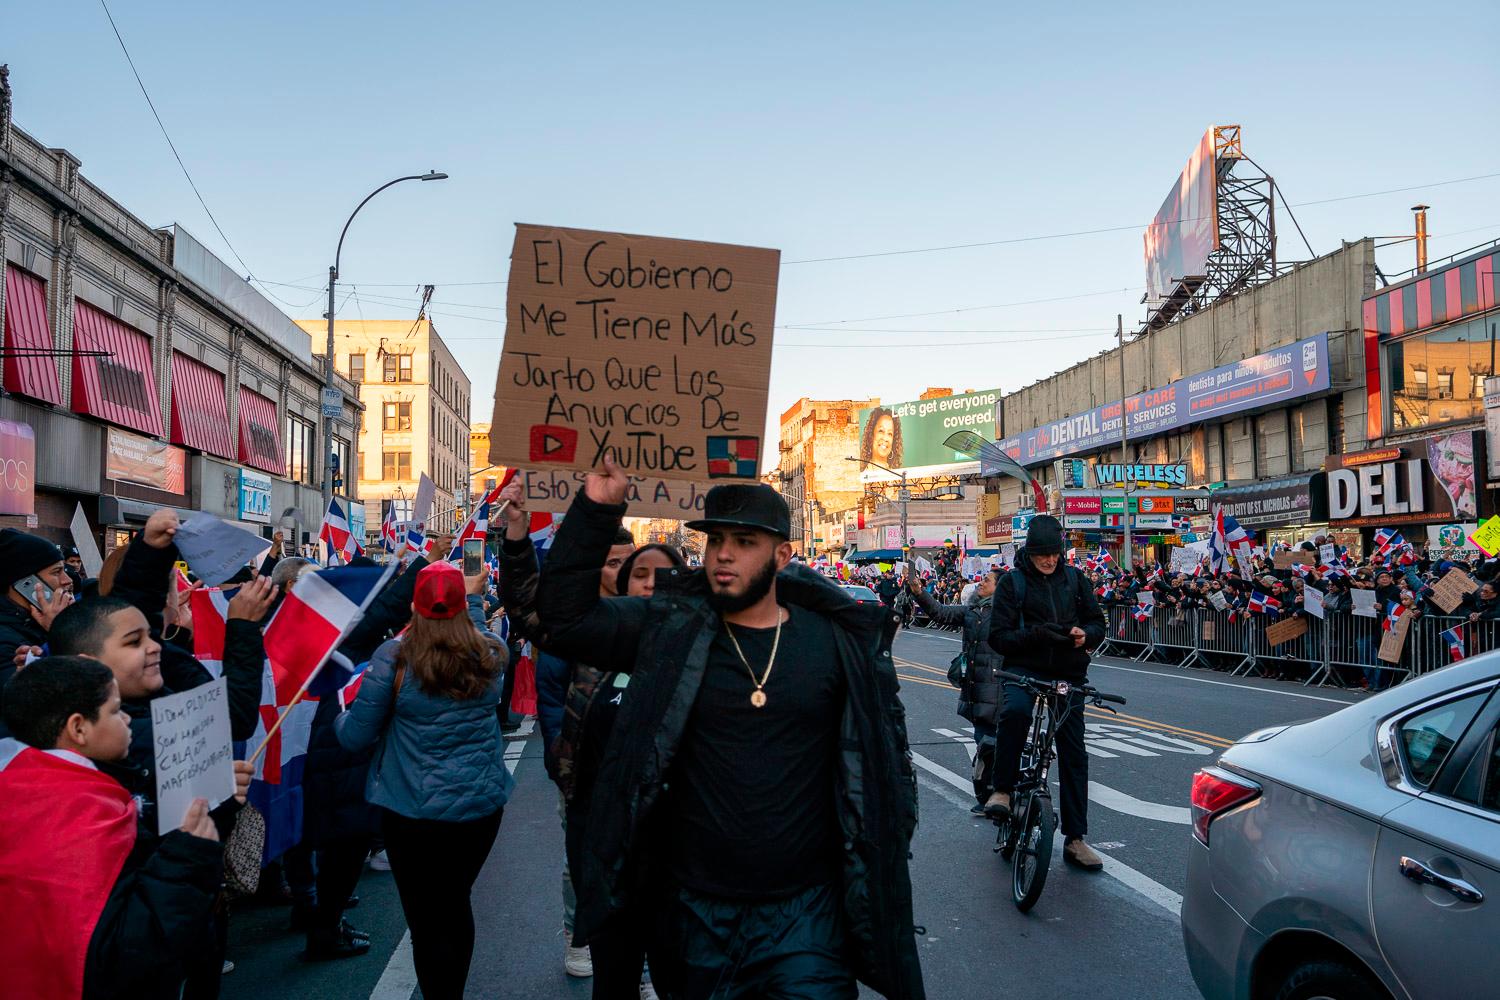 Al igual que las manifestaciones que se realizan en el país, los que participaron en la de Nueva York, fueron vestidos de negro, llevaron pancartas y ondearon la Bandera Nacional.